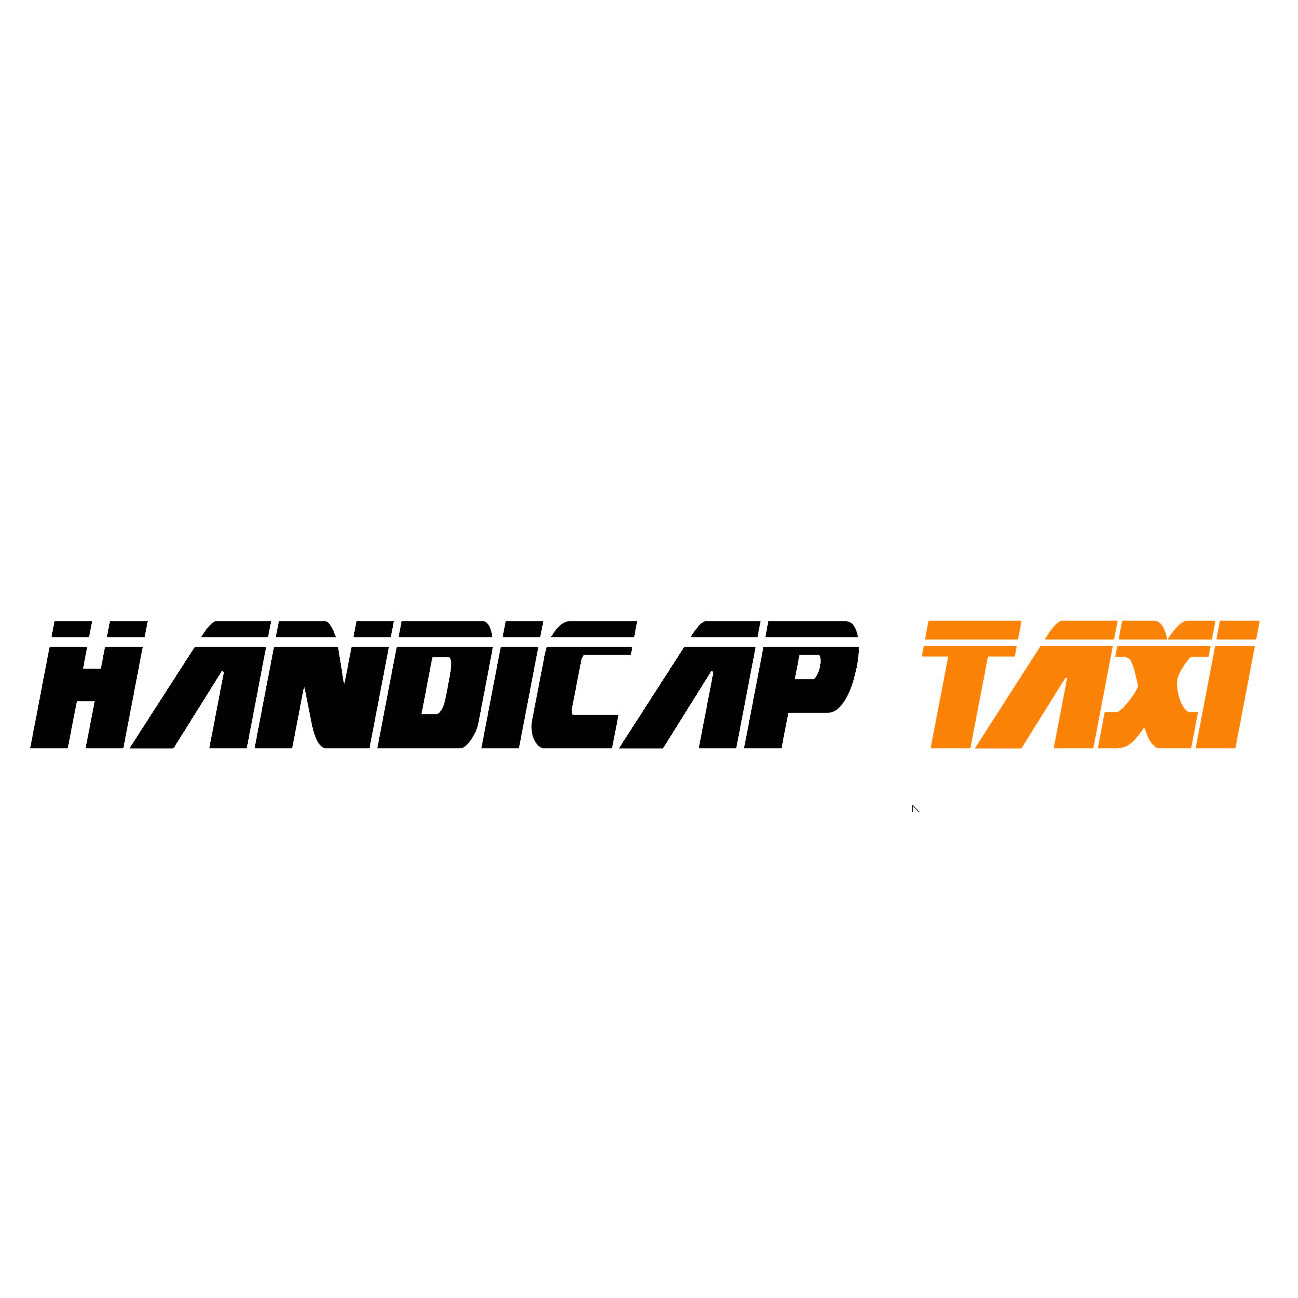 Handicap Taxi Logo